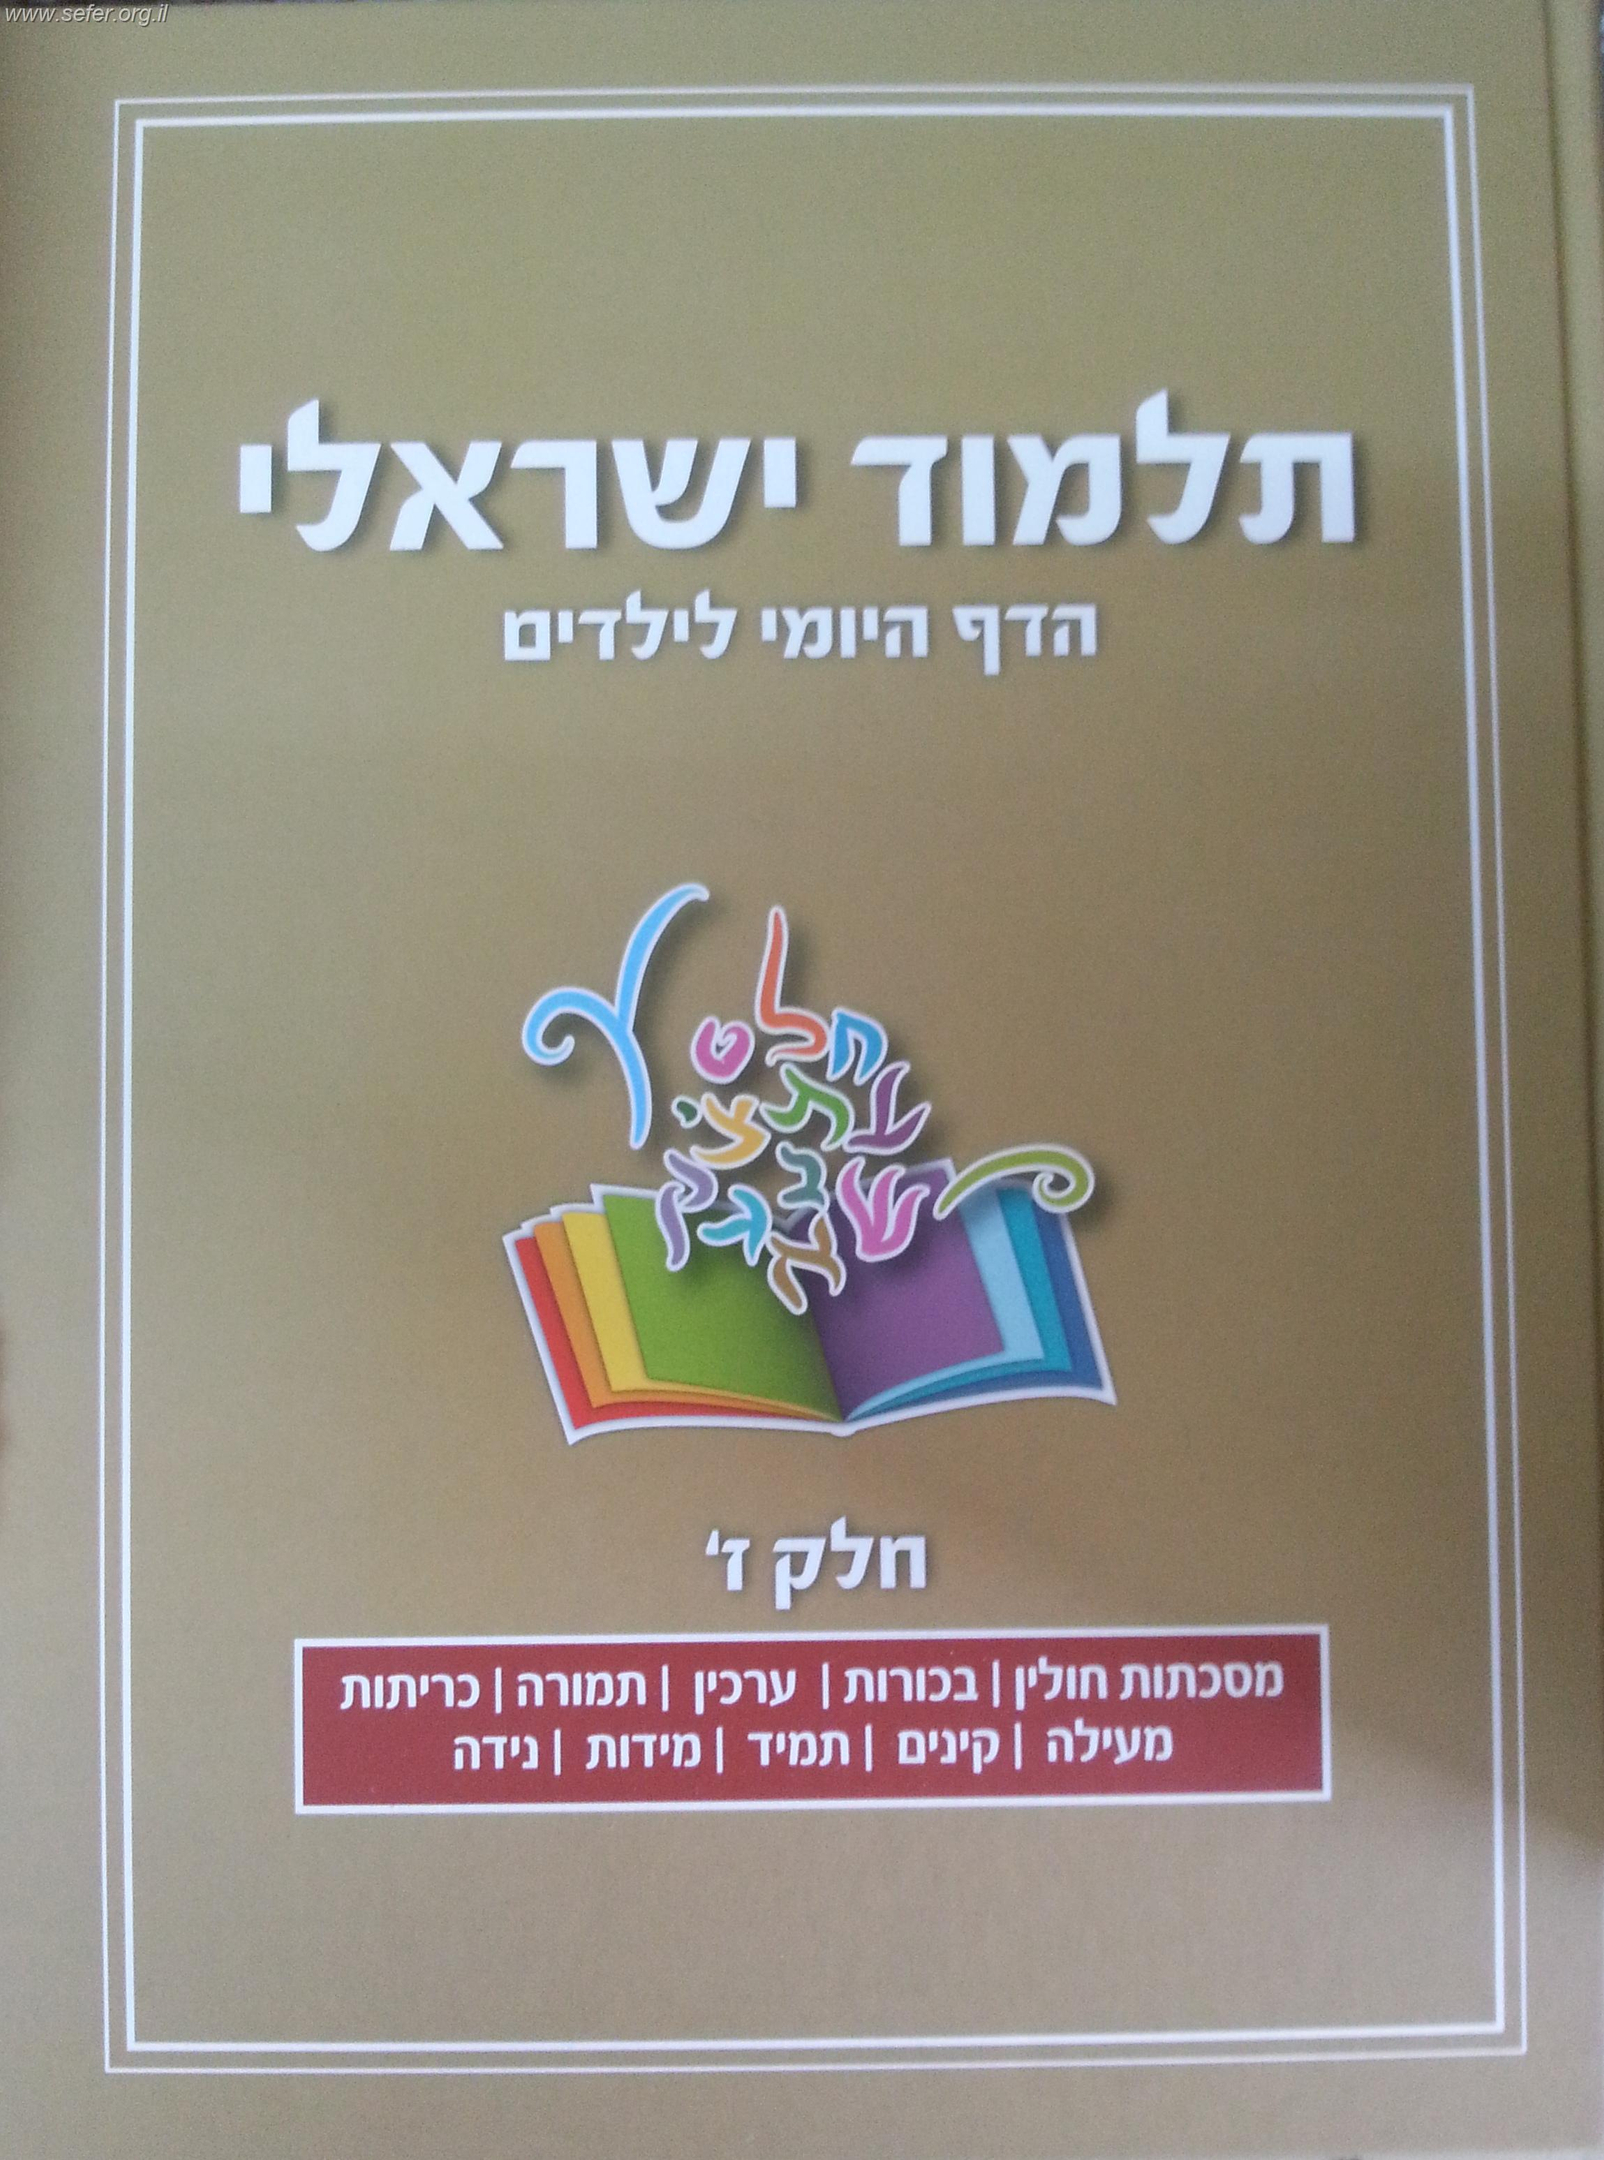 תלמוד ישראלי - הדף היומי לילדים (7) כרך חדש!!!